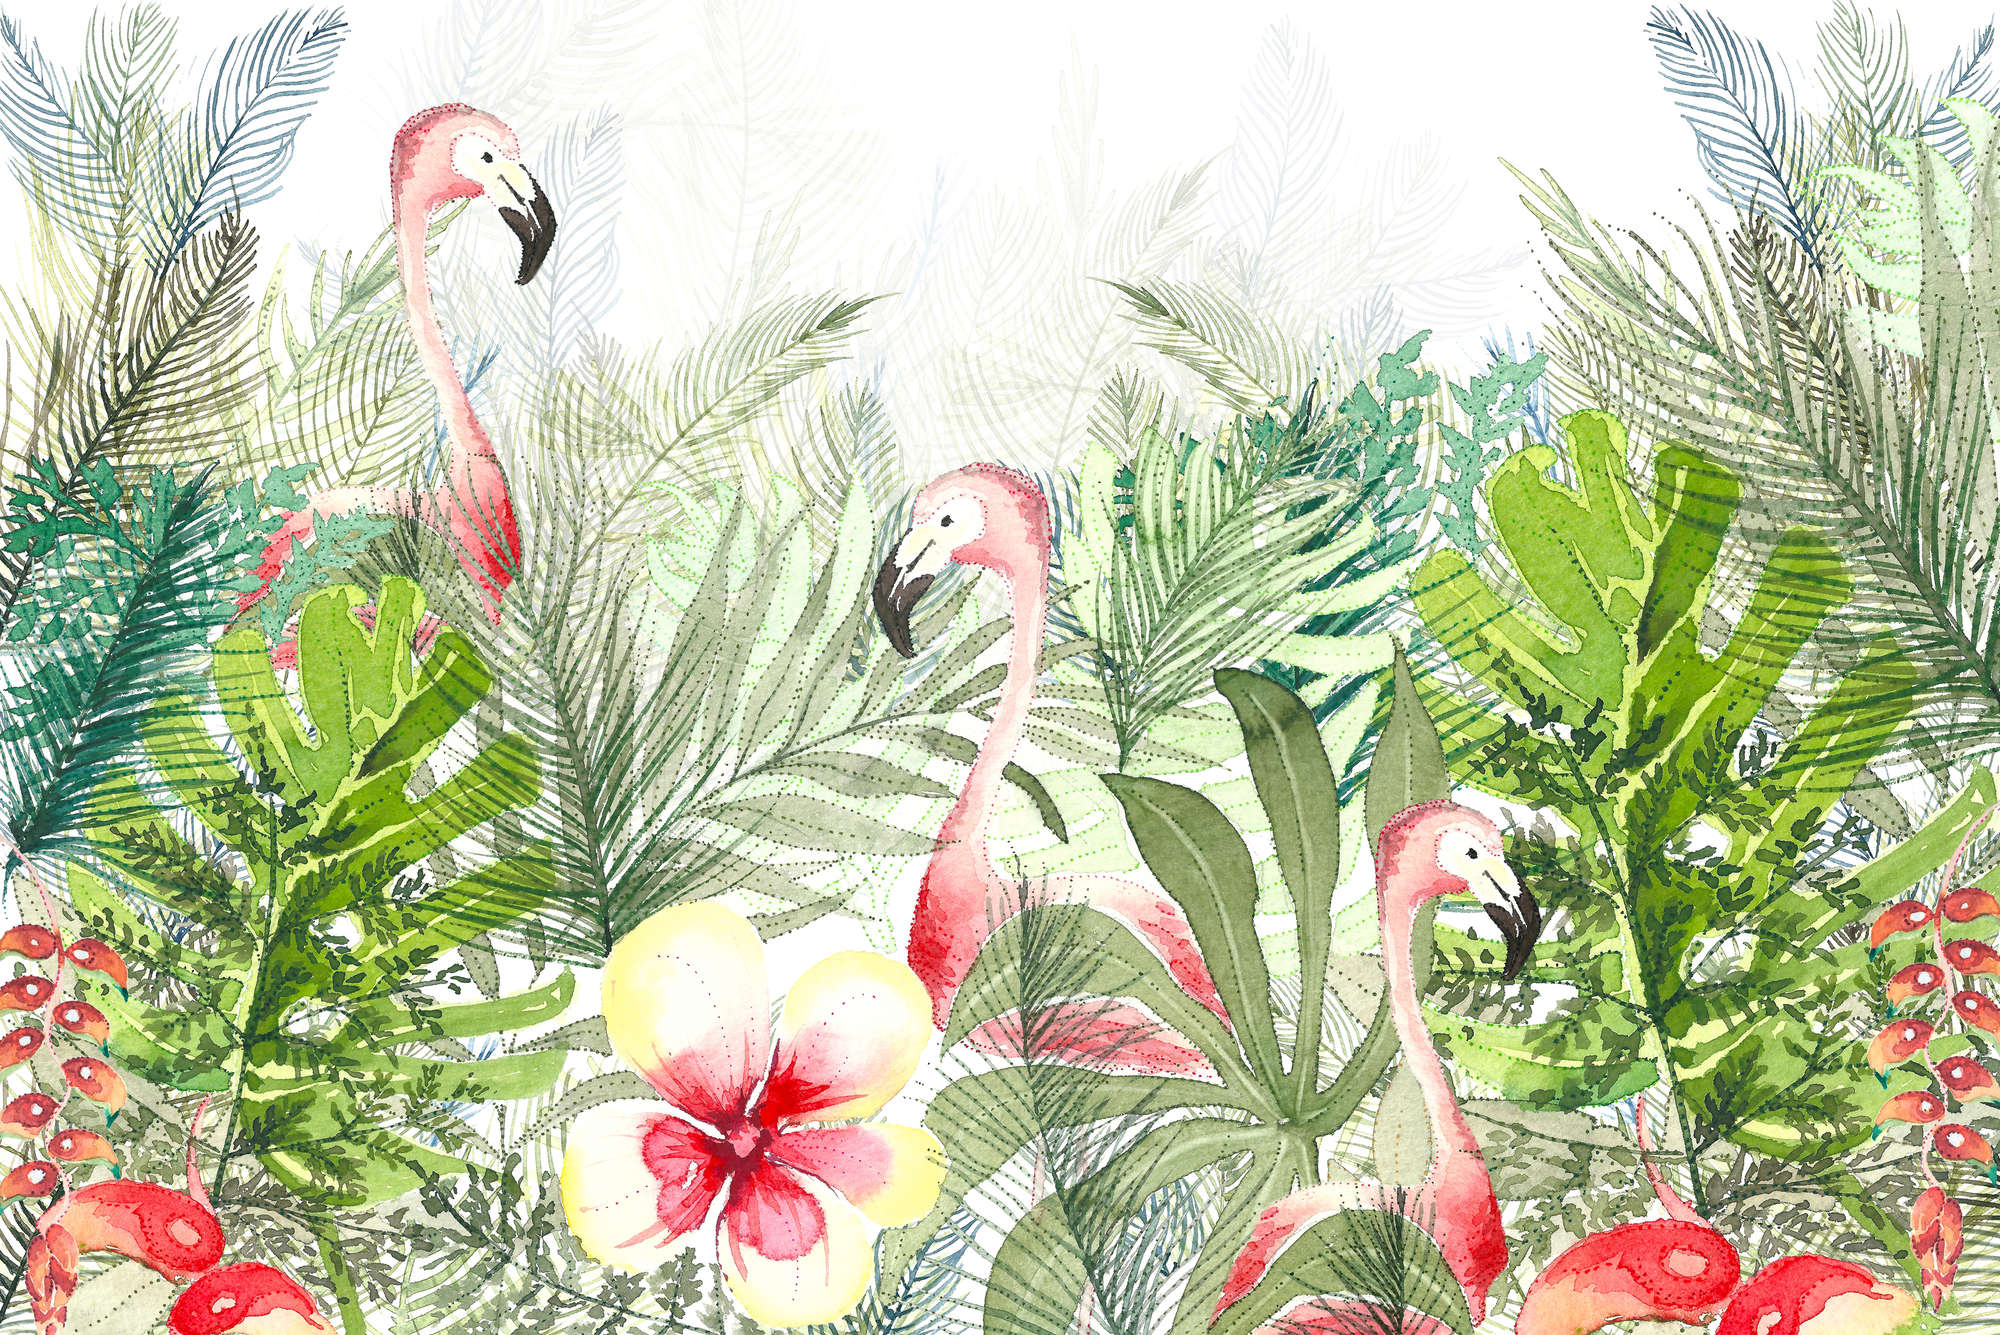             Papel pintado de acuarela Flamingo, hojas y flores sobre vellón liso de nácar
        